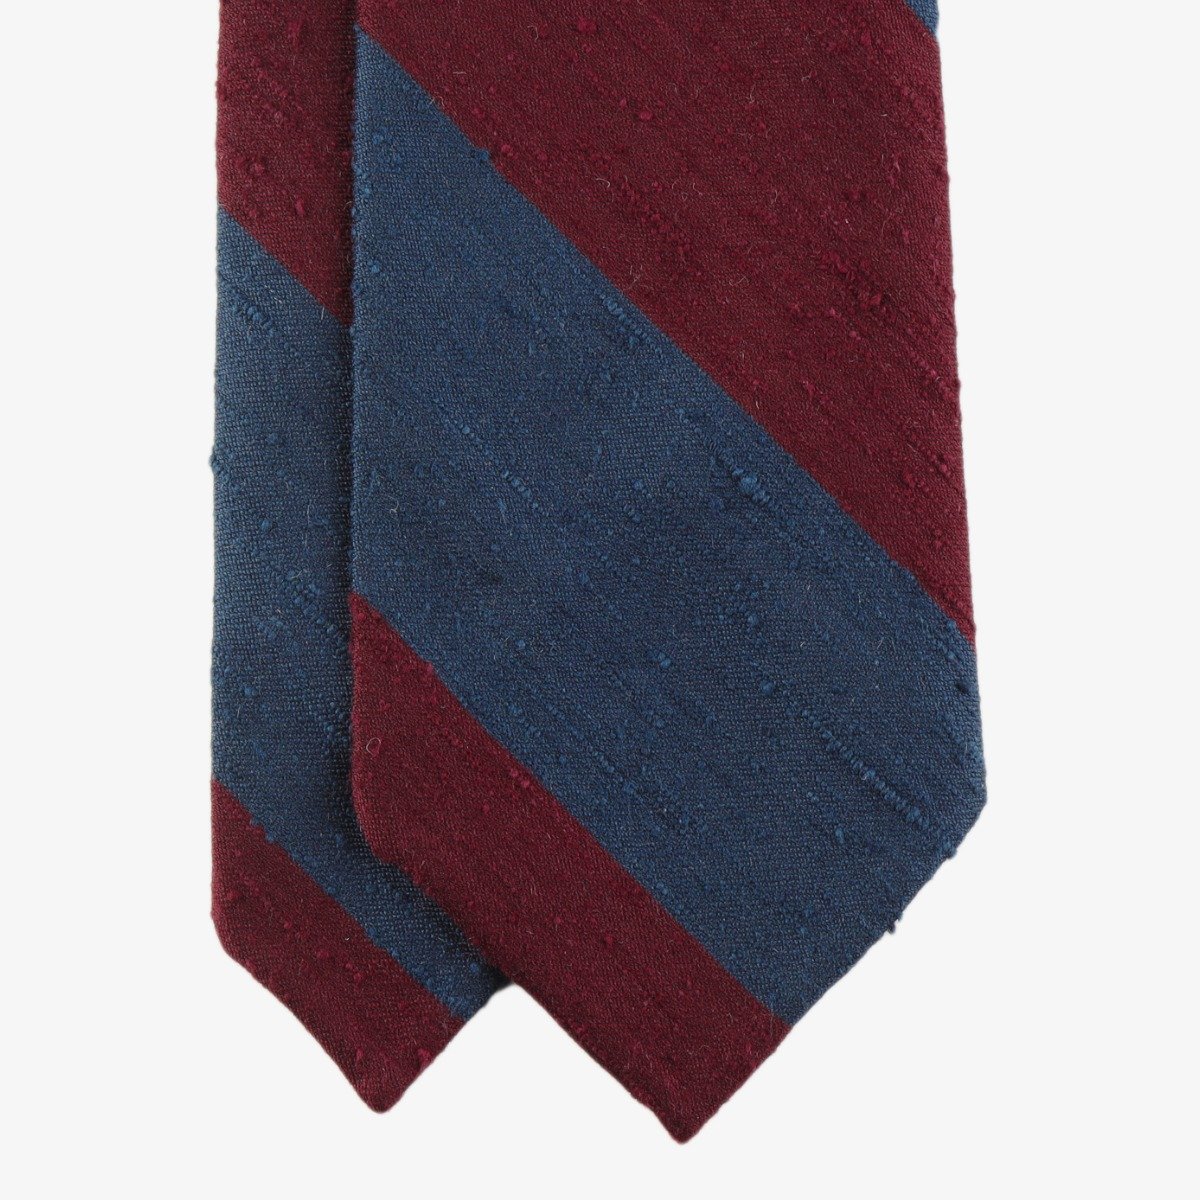 Shibumi Firenze mėlynas ir raudonas dryžuotas shantung šilko kaklaraištis